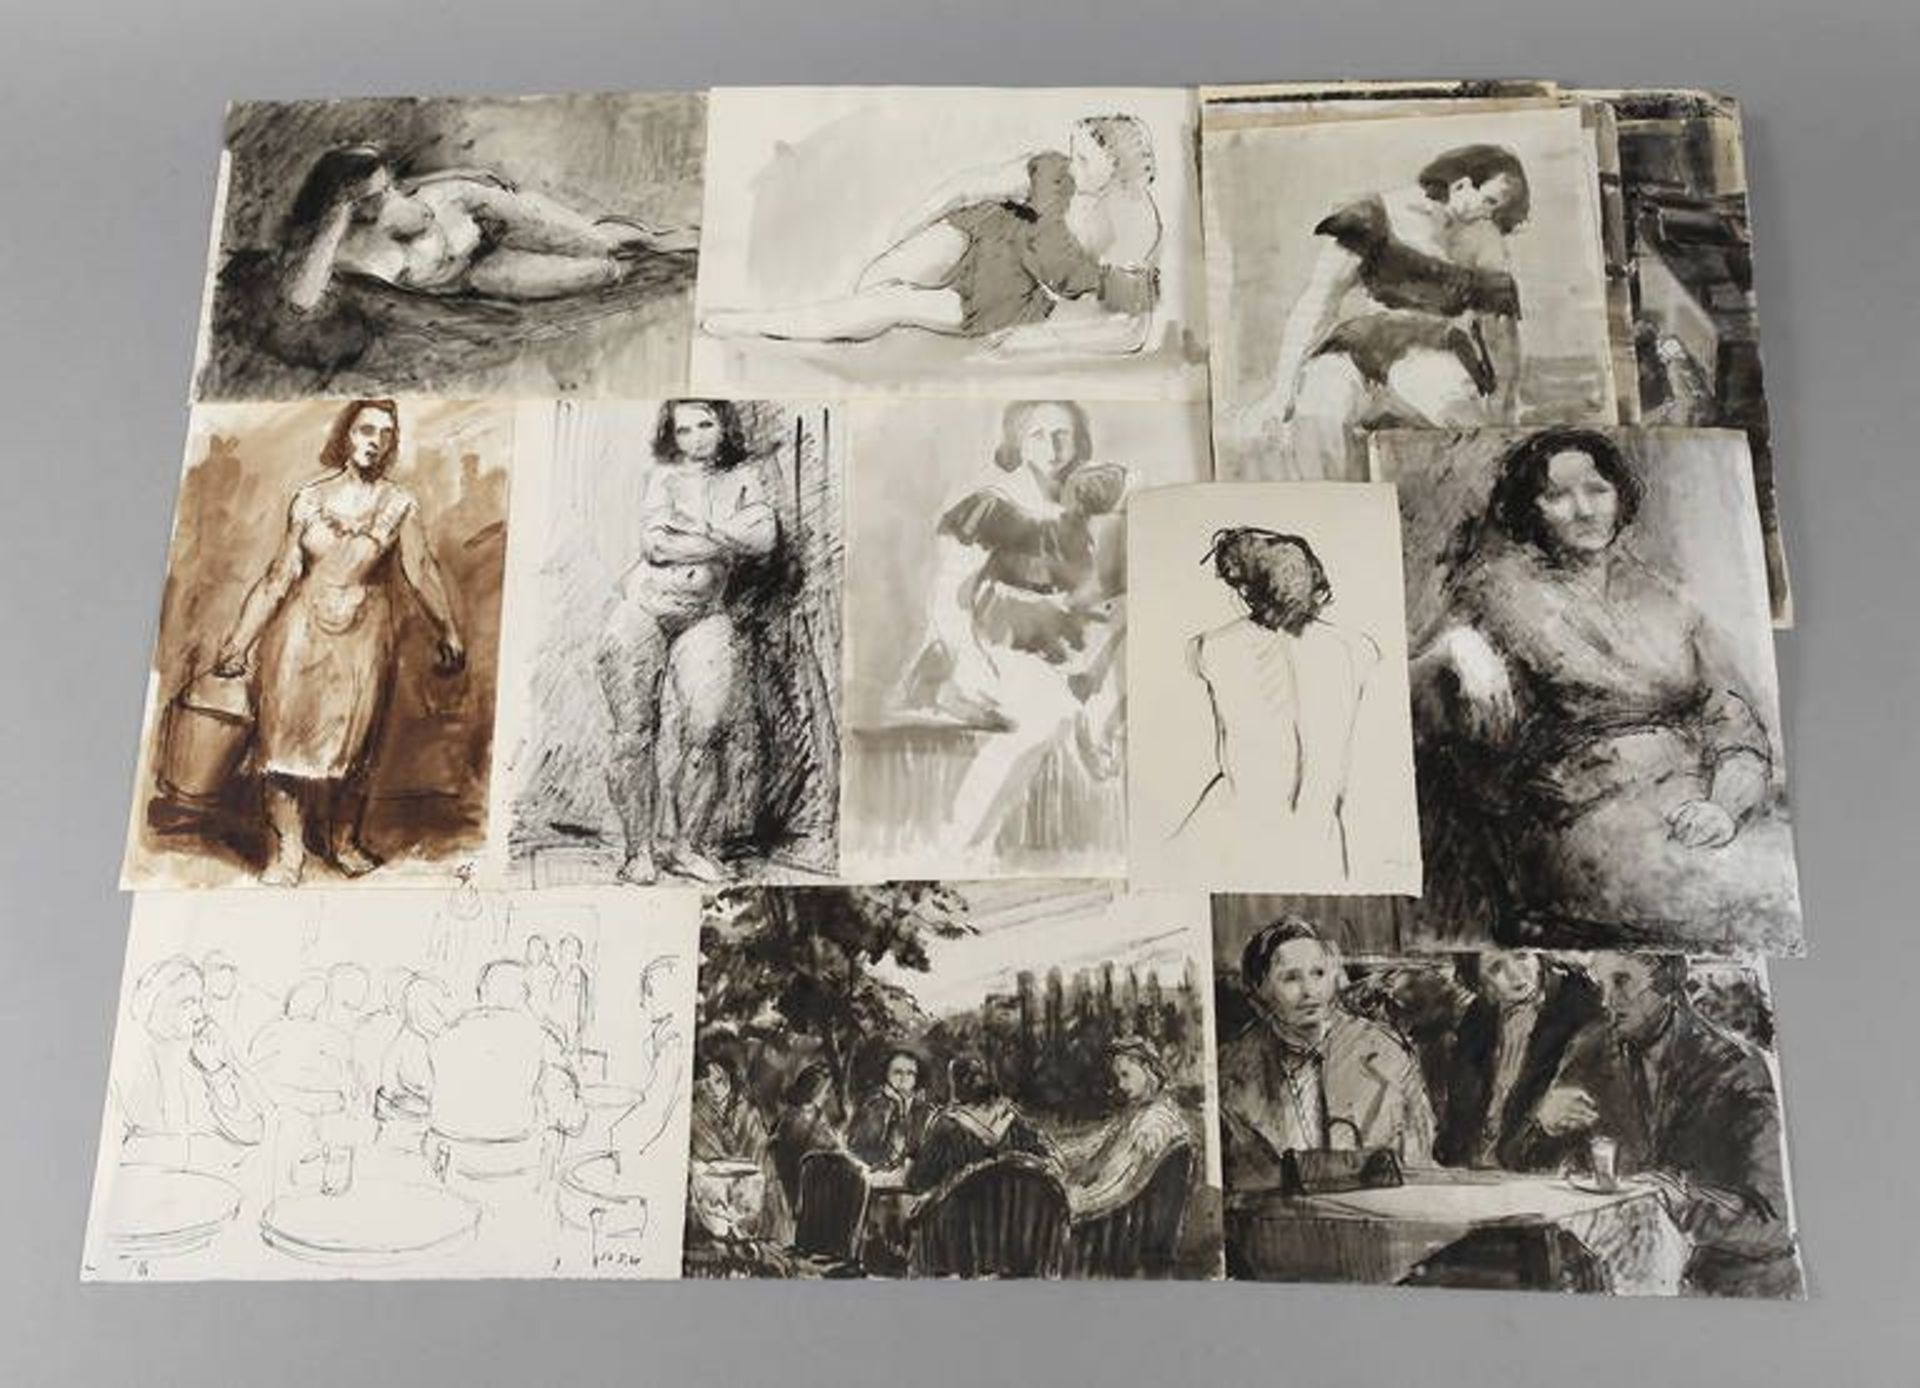 Künstlernachlasskonvolut mit Figurenzeichnungen  enthaltend Aktstudien, Einzel- und Gruppenbilder